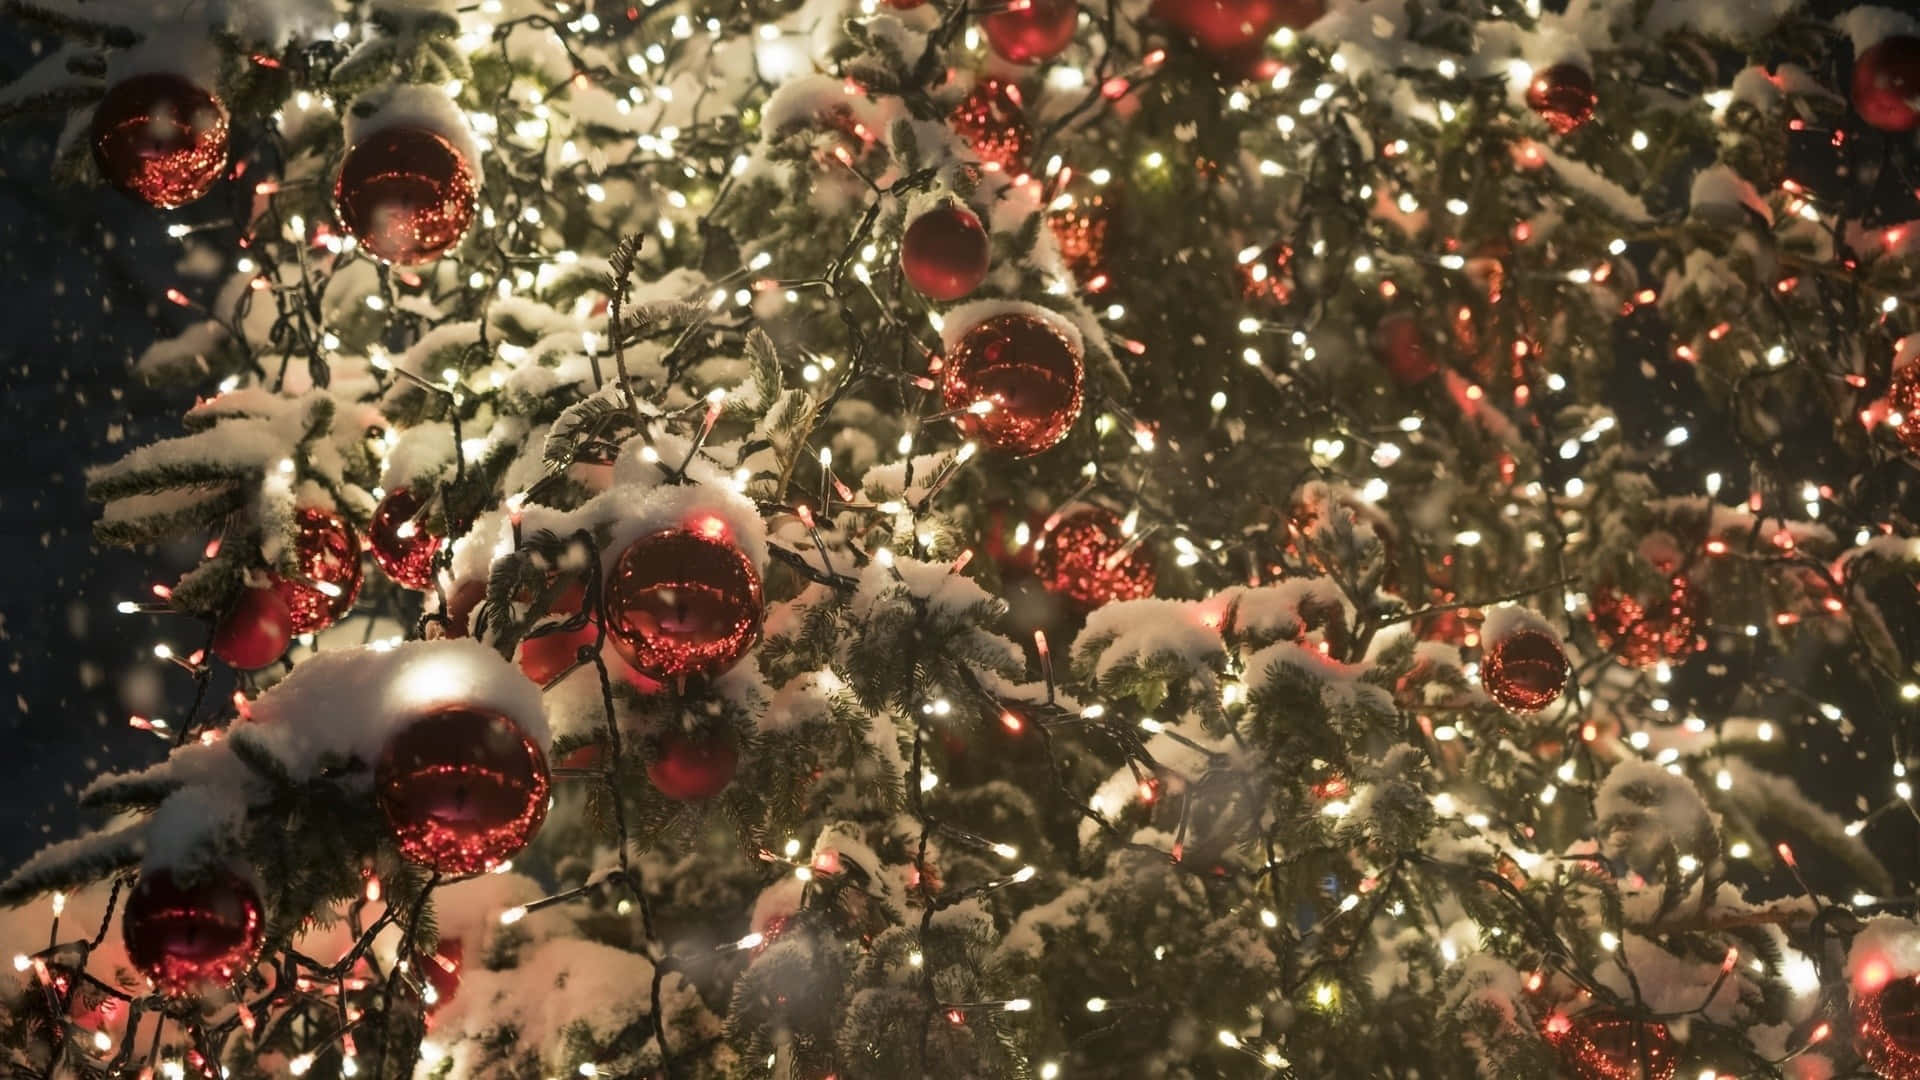 Goditila Stagione Con Questa Vivace E Colorata Immagine Di Natale Per Il Computer Alla Moda Di Tumblr. Sfondo